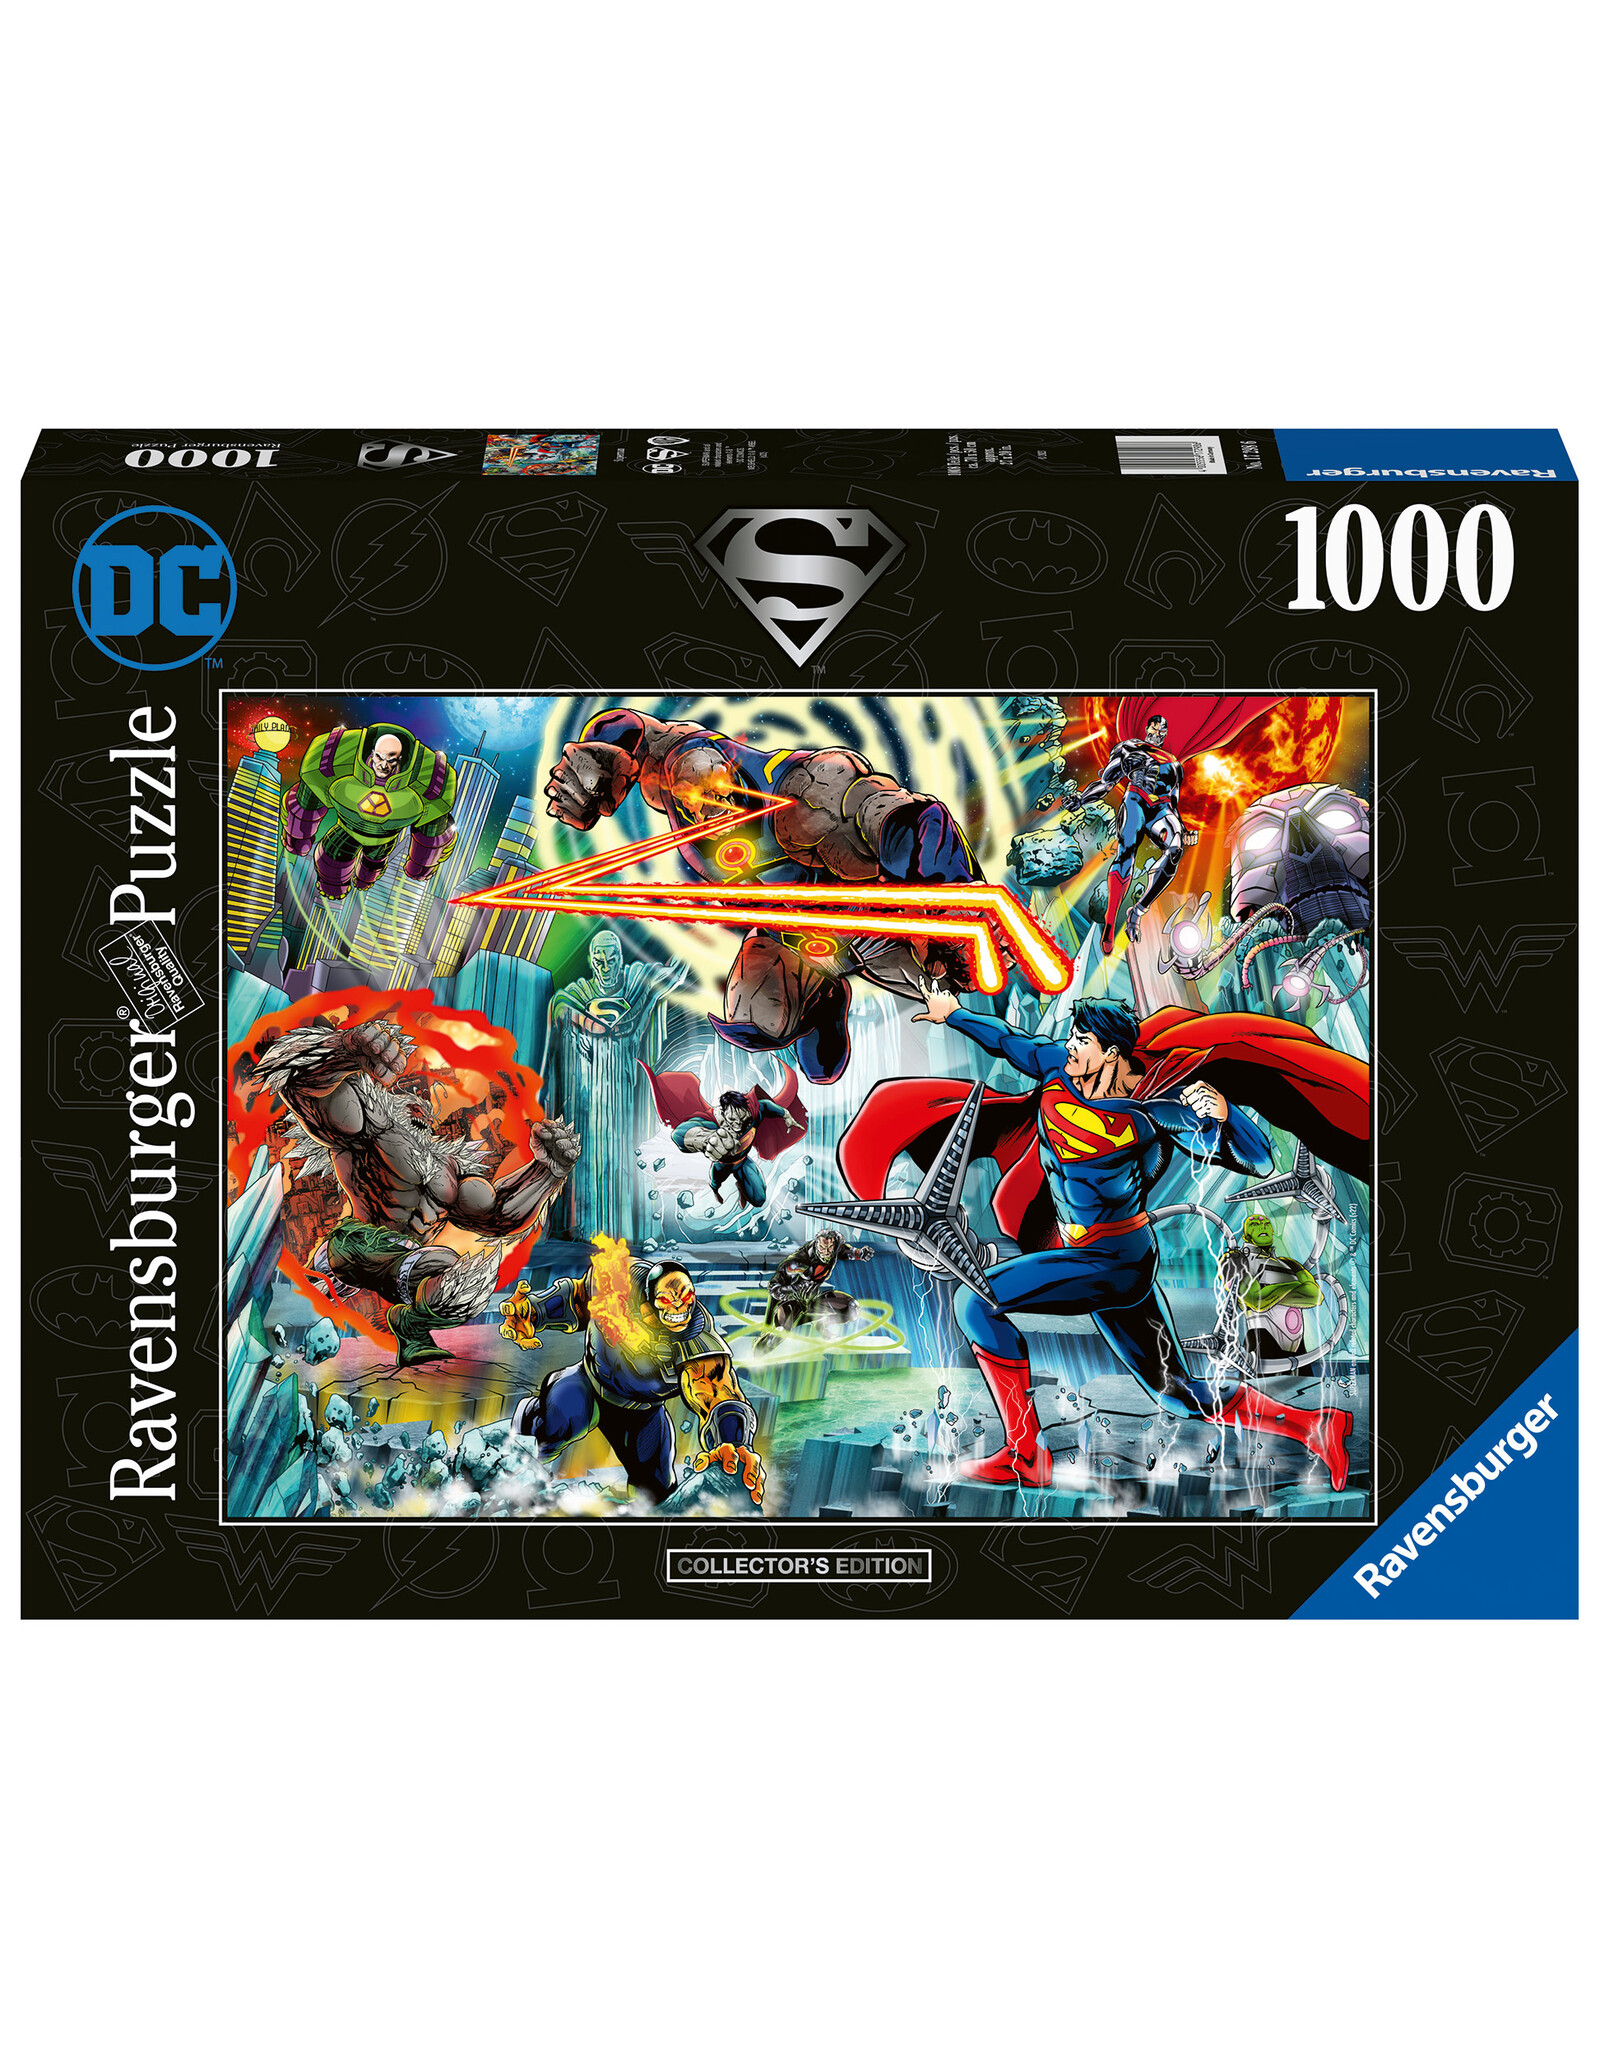 DC Superman Collection 1000 pc Puzzle